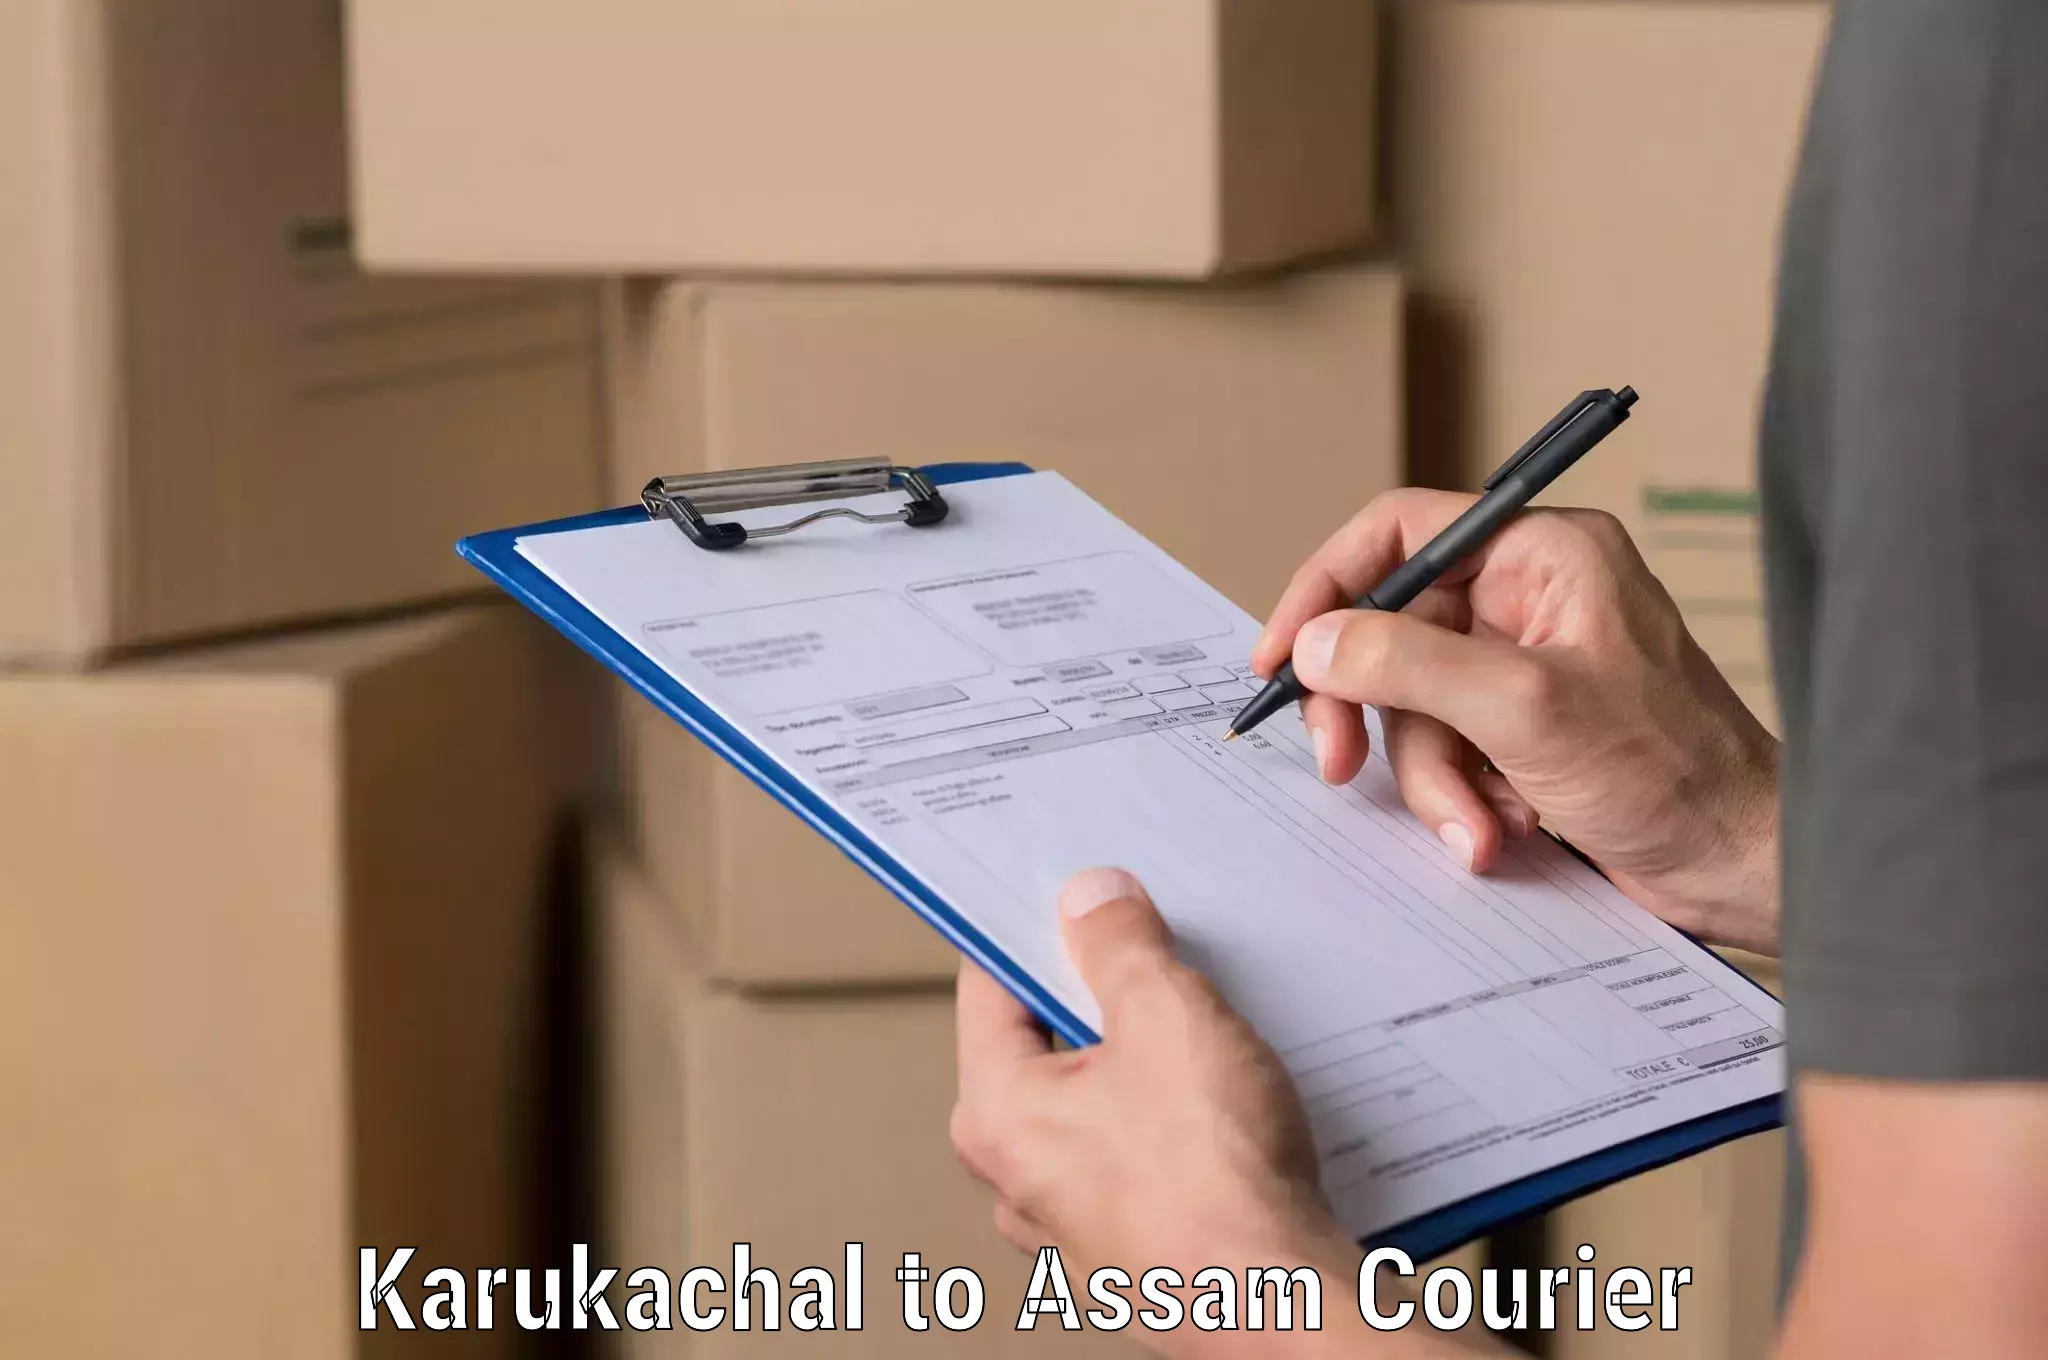 Affordable international shipping in Karukachal to Karimganj